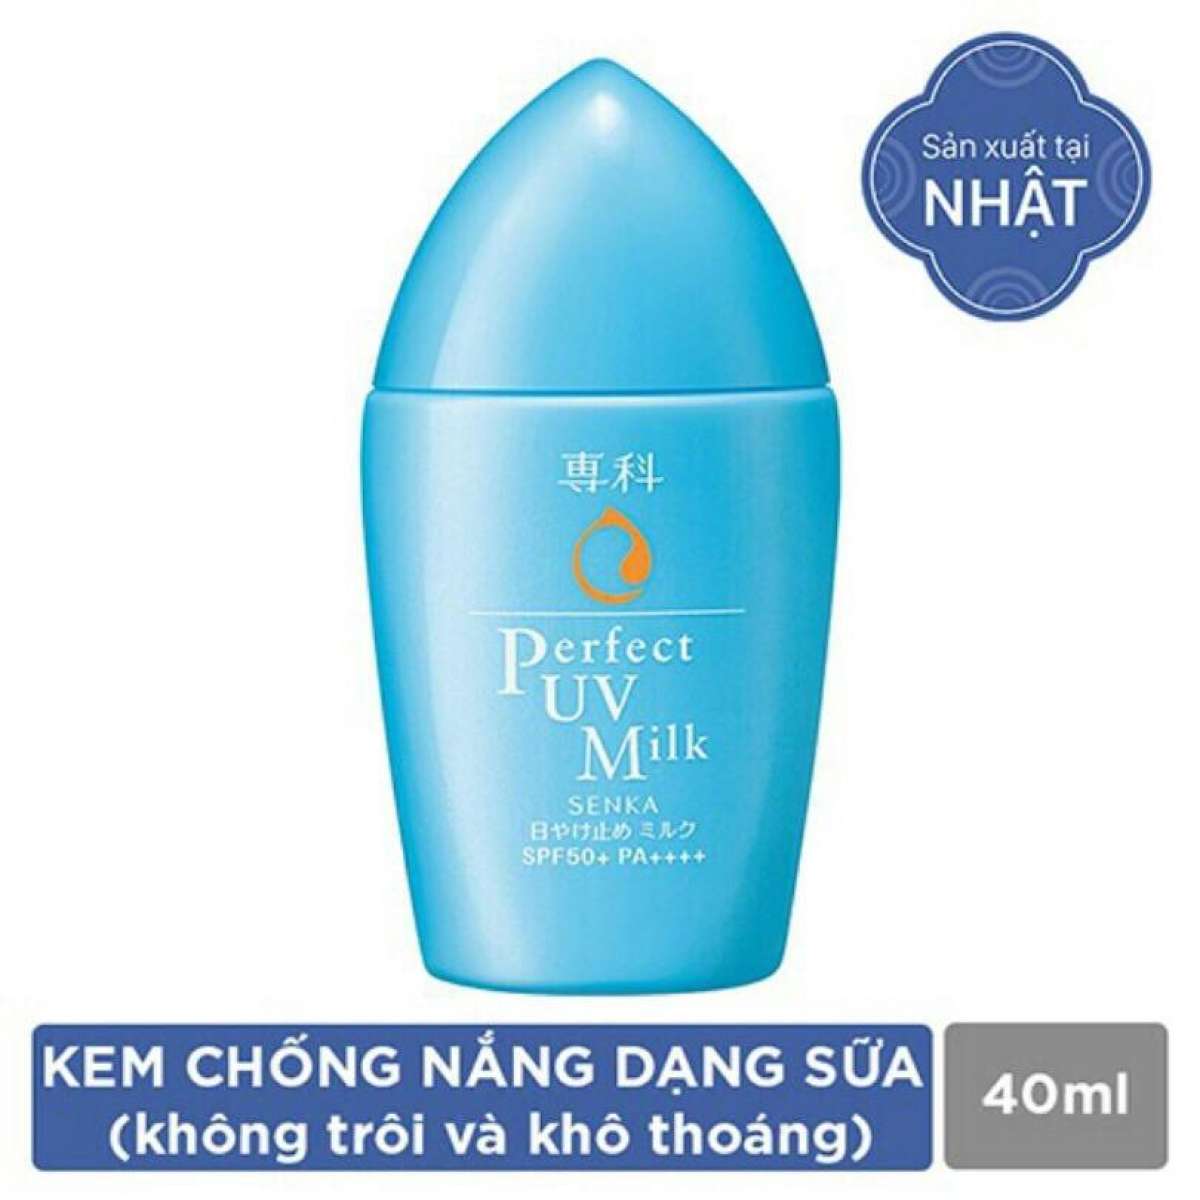 Kem Chống Nắng Dạng Sữa Senka Perfect UV Milk 40ml 14095 tặng Mặt nạ dưỡng da The Face Shop Real Nature (1 miếng)